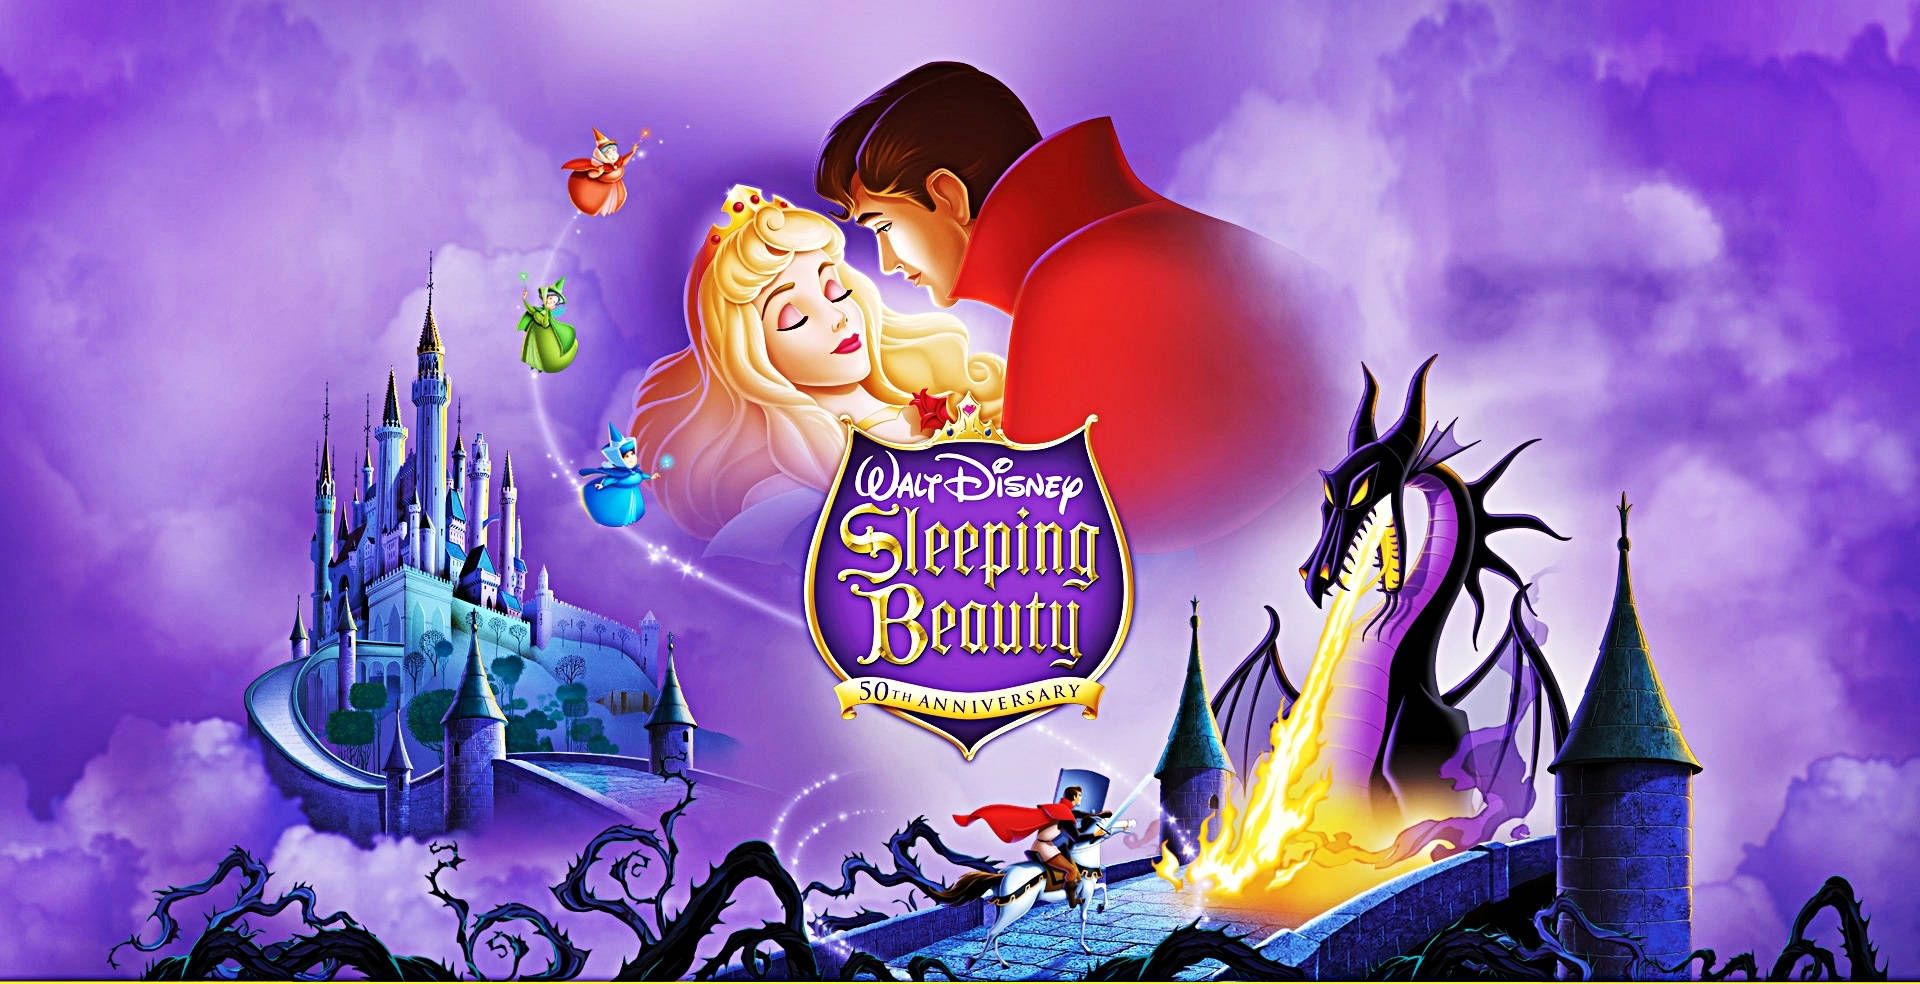 Disney Desktop Sleeping Beauty